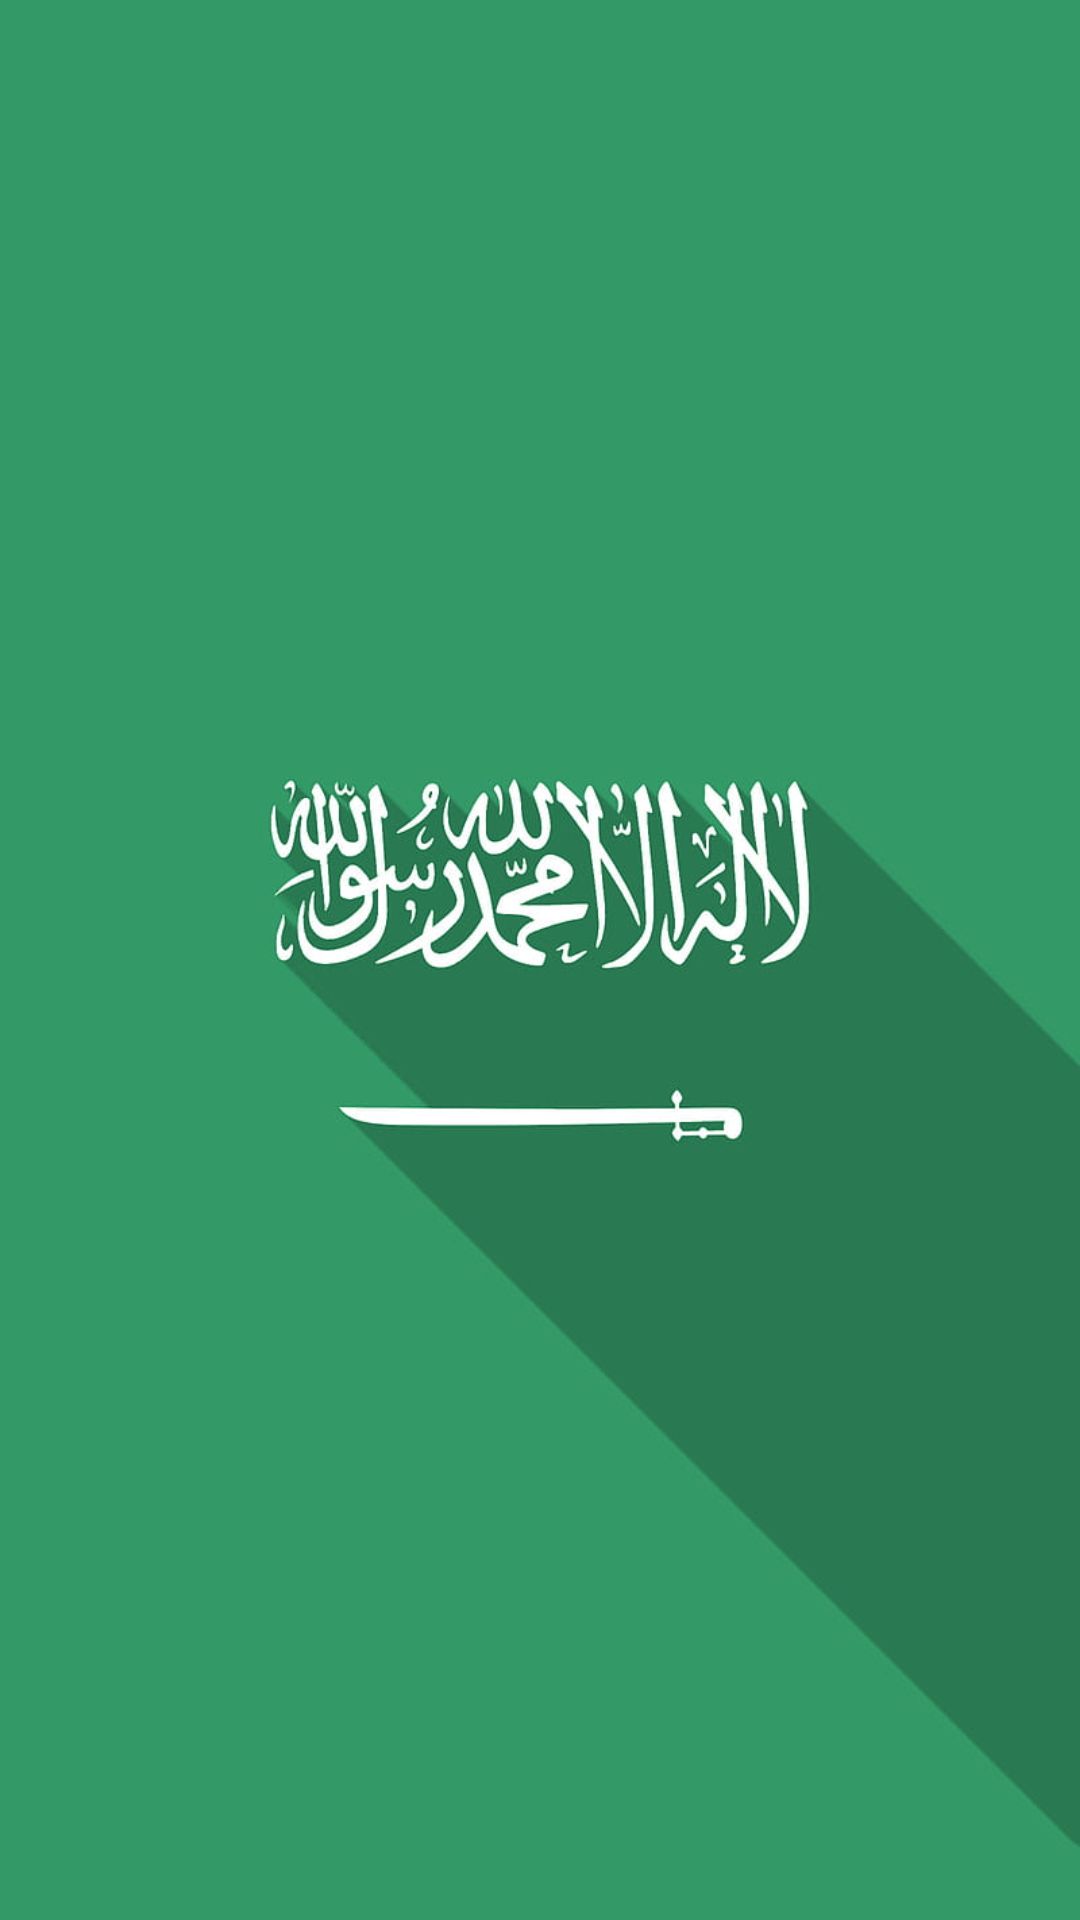 Saudi Arabia Flag Wallpapers - Top 30 Best Saudi Arabia Flag Wallpapers  Download